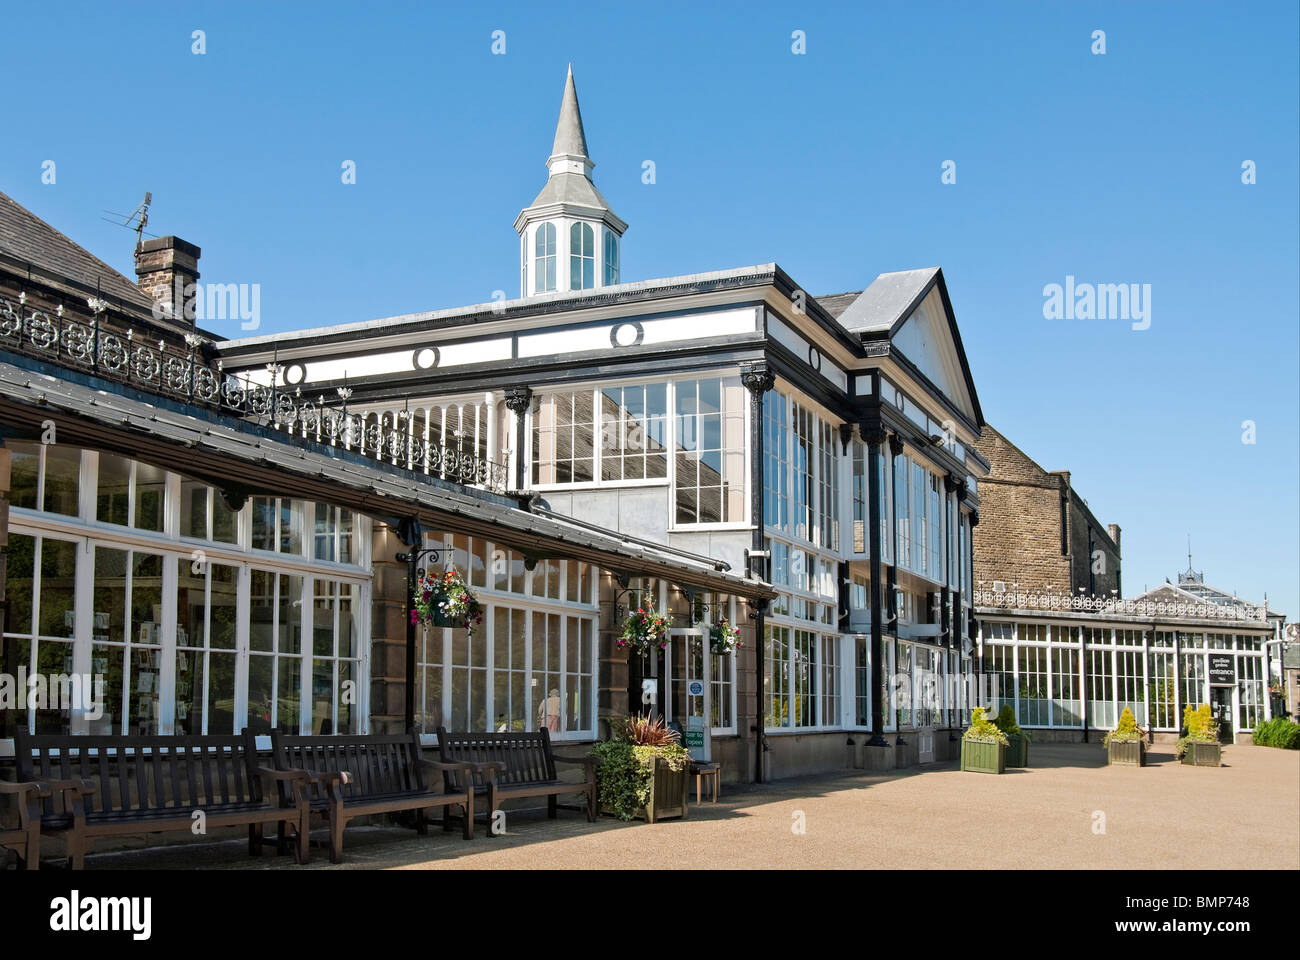 Immagine del Pavilion Gardens in Buxton, una sede storica situata nel cuore di Buxton. Foto Stock